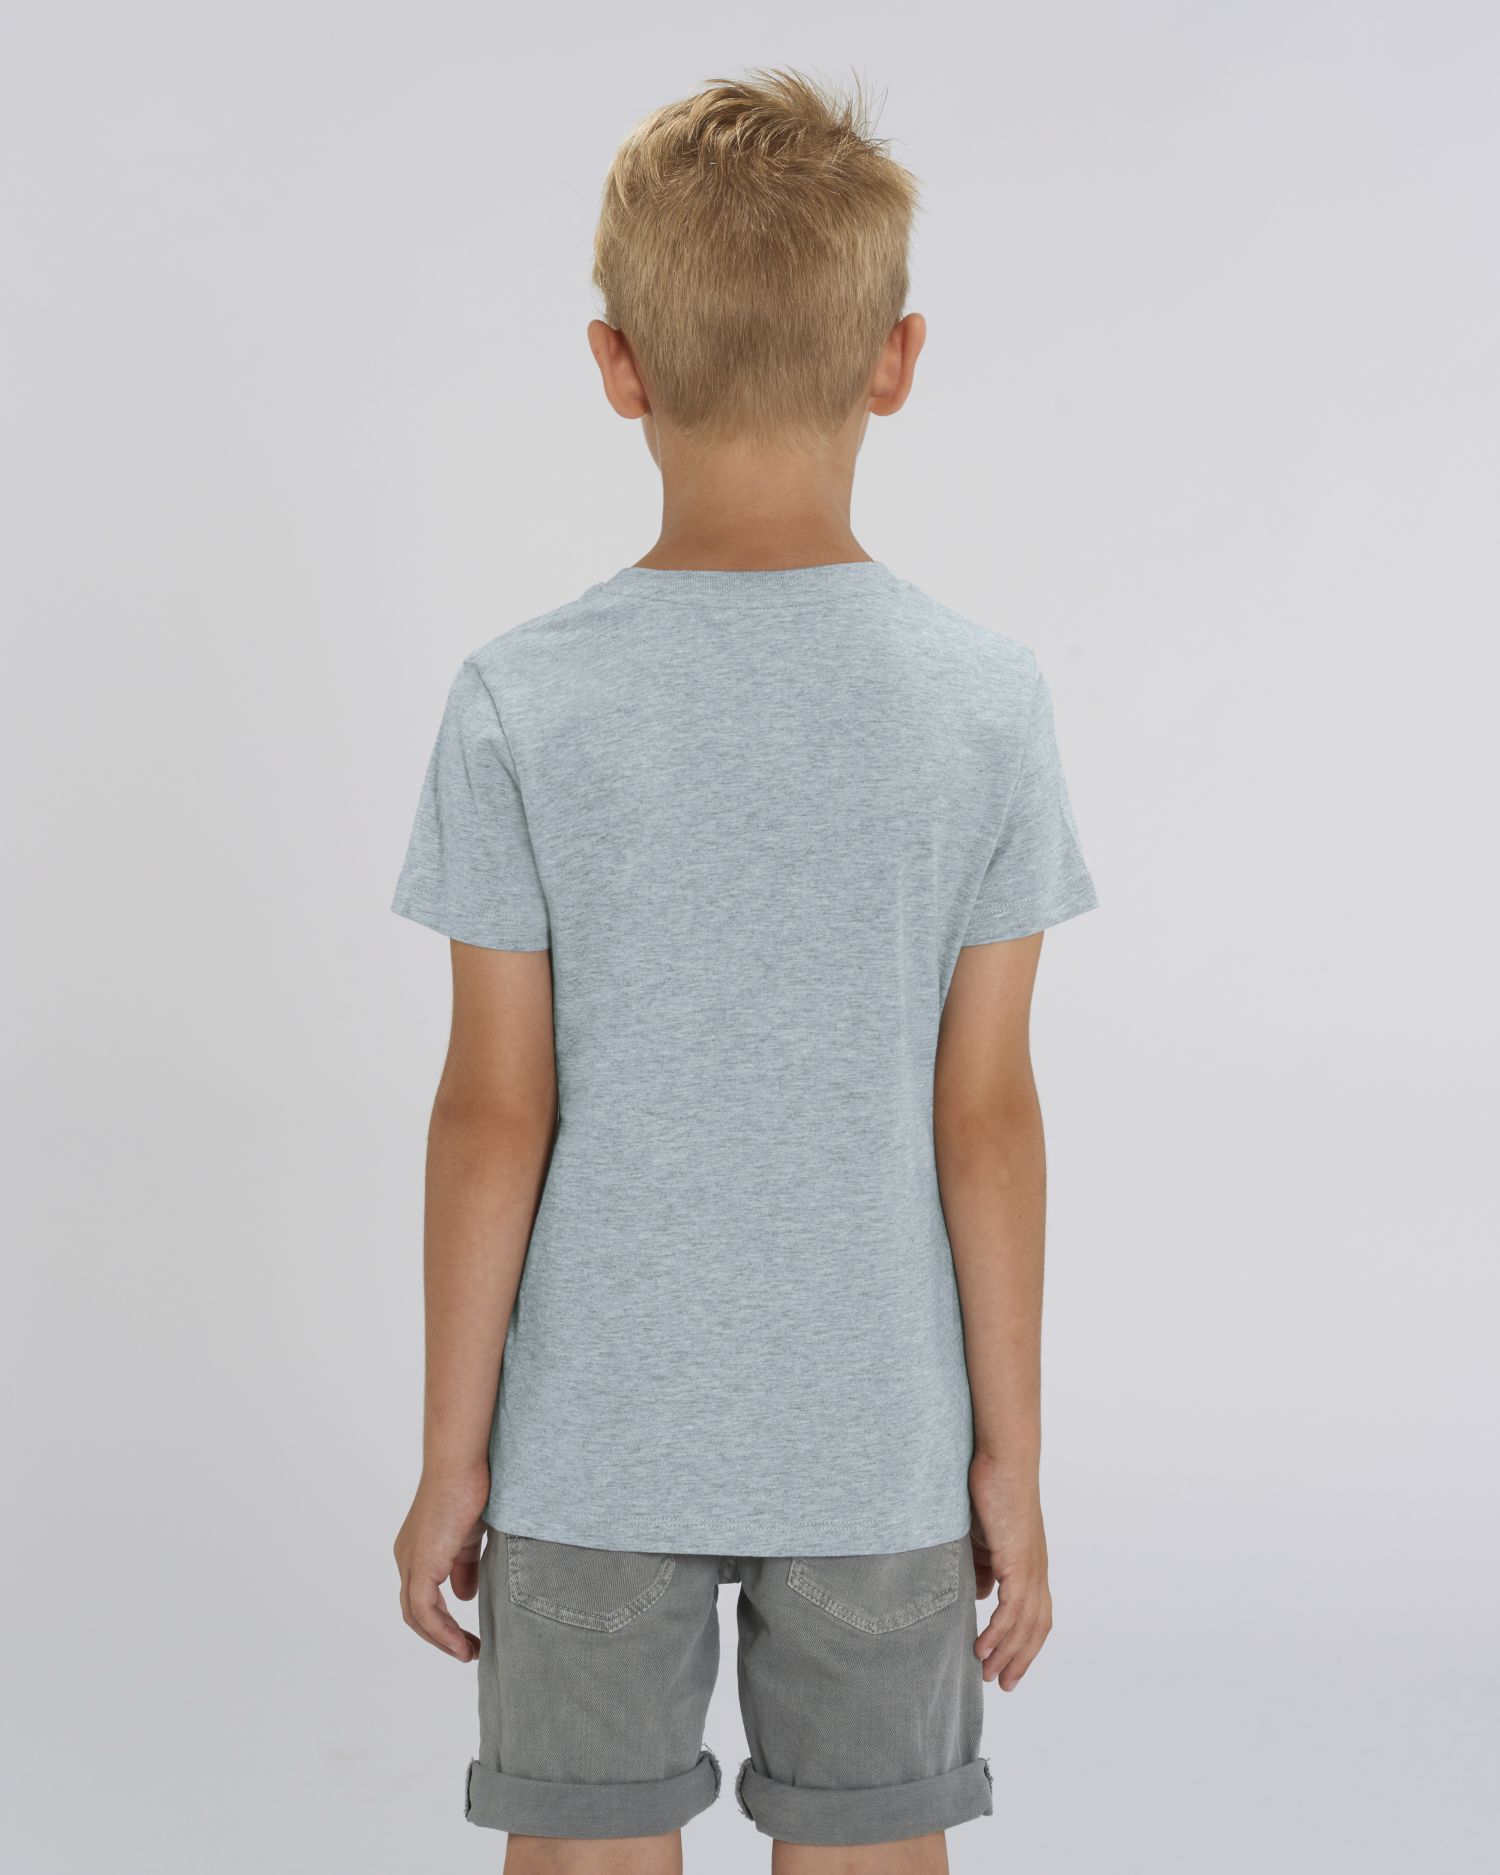 Kids T-Shirt Mini Creator in Farbe Heather Ice Blue